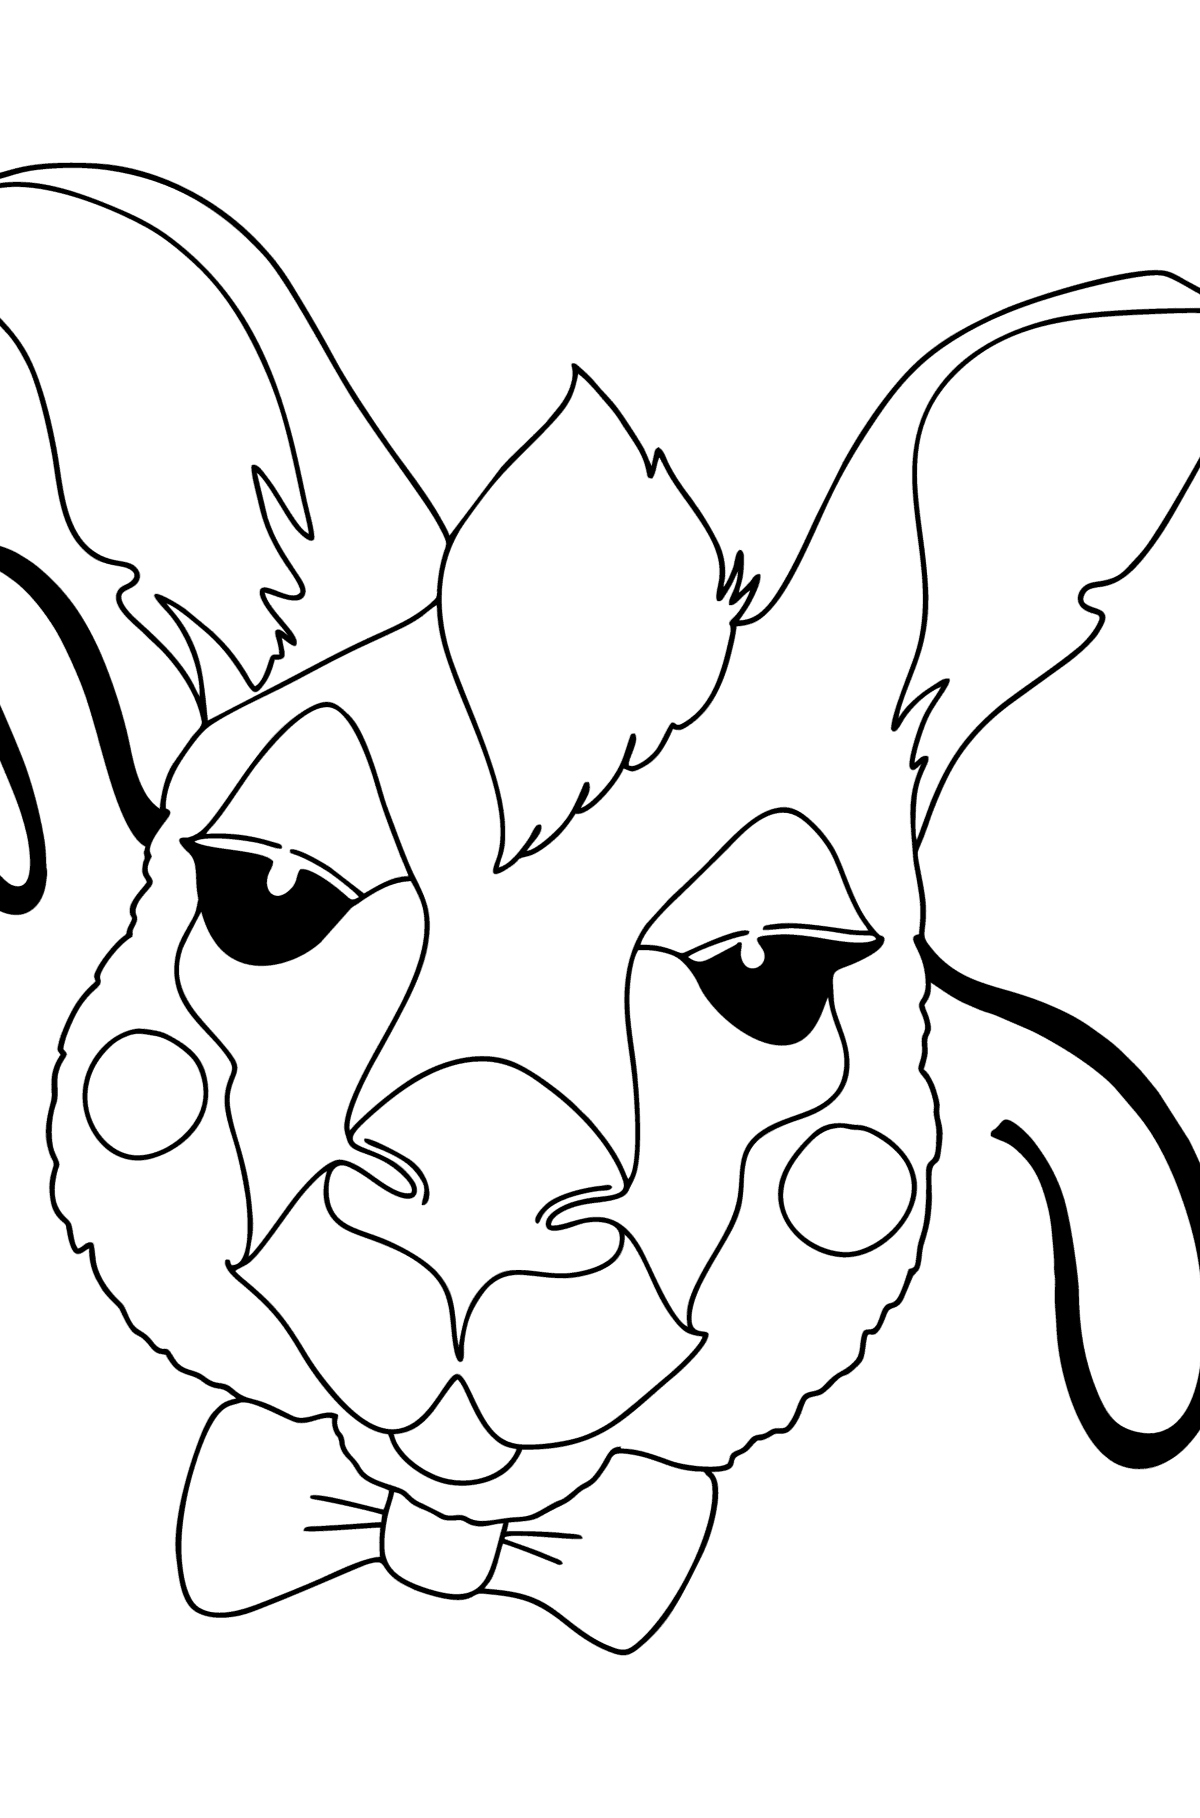 Coloriage - Masque de kangourou - Coloriages pour les Enfants